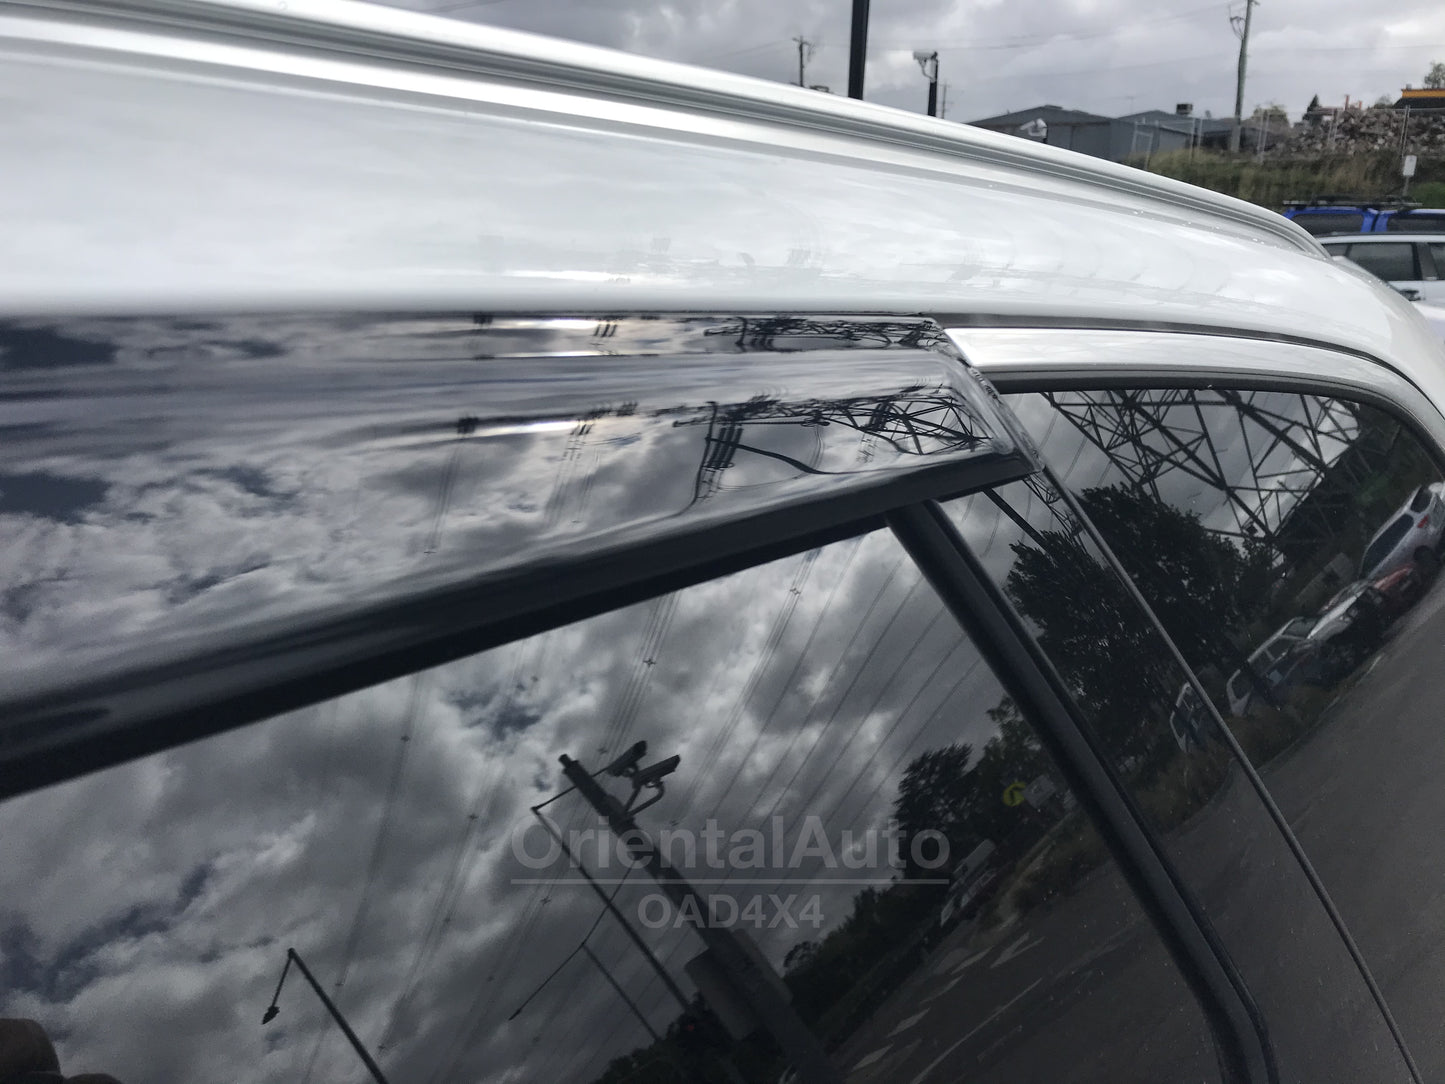 Luxury Weathershields Weather Shields Window Visor For Volvo XC60 2017+